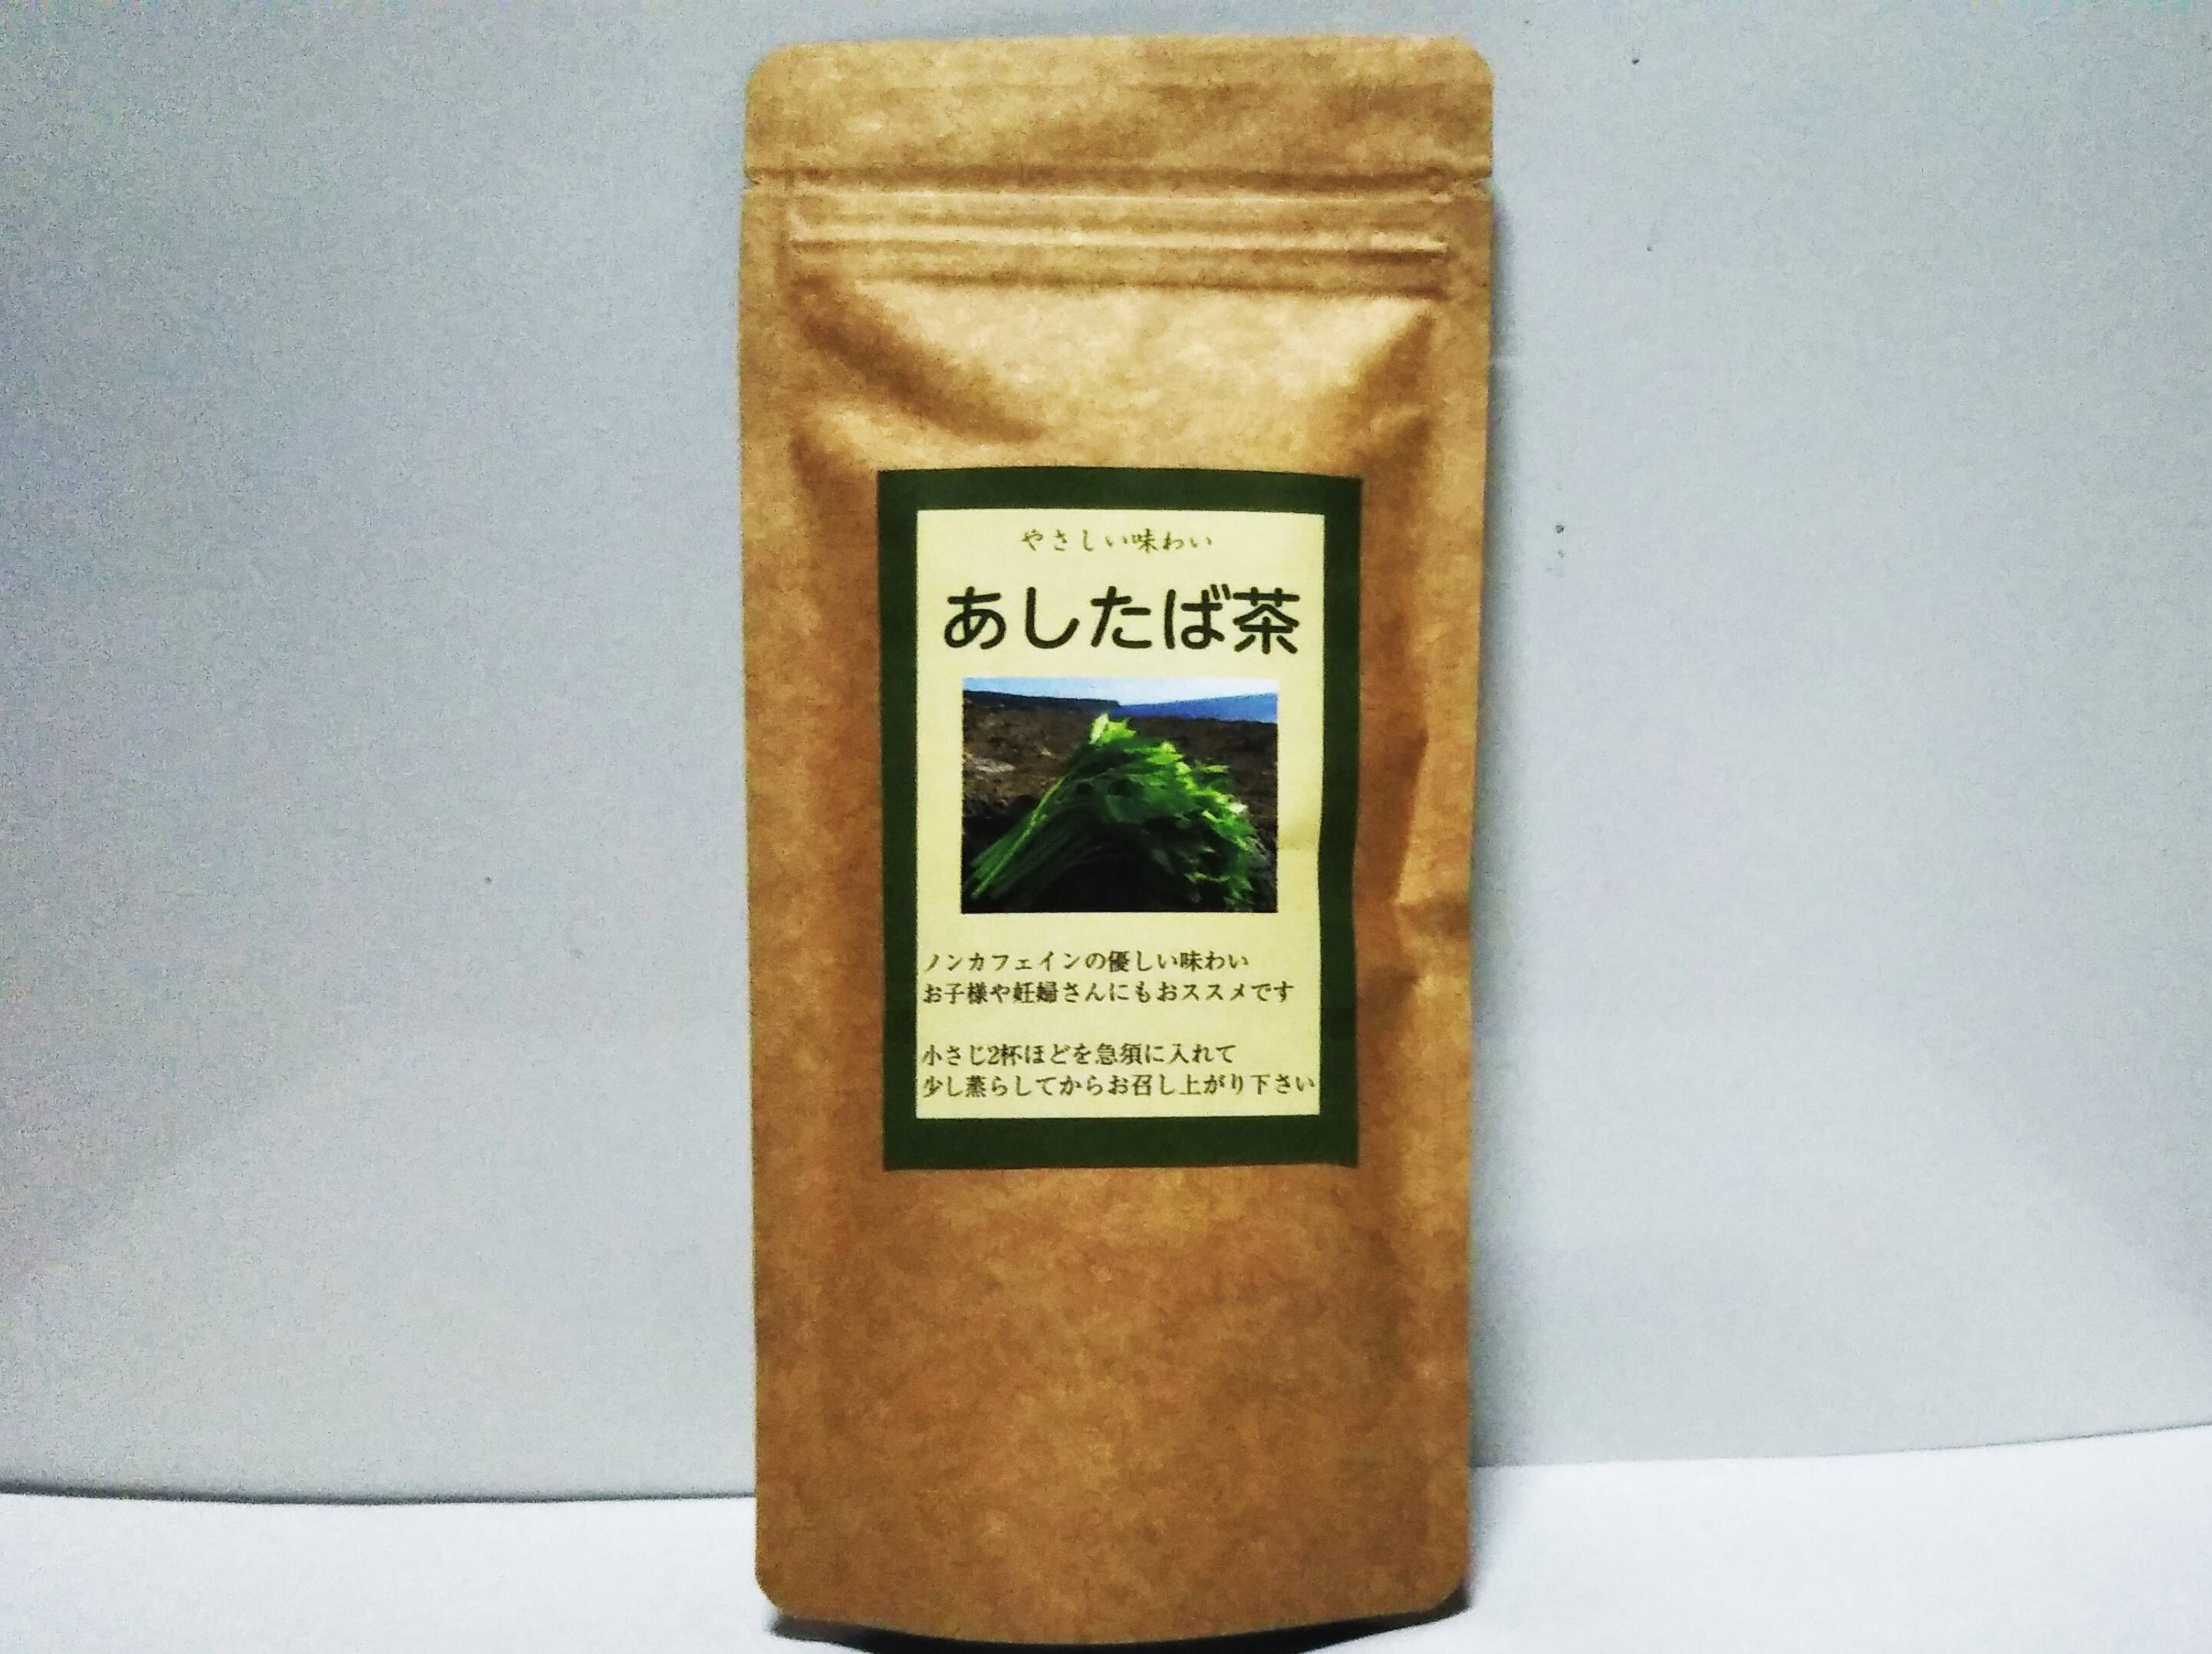 秒で発送 あしたばの お茶 3パック 東京都産 食べチョク 農家 漁師の産直ネット通販 旬の食材を生産者直送